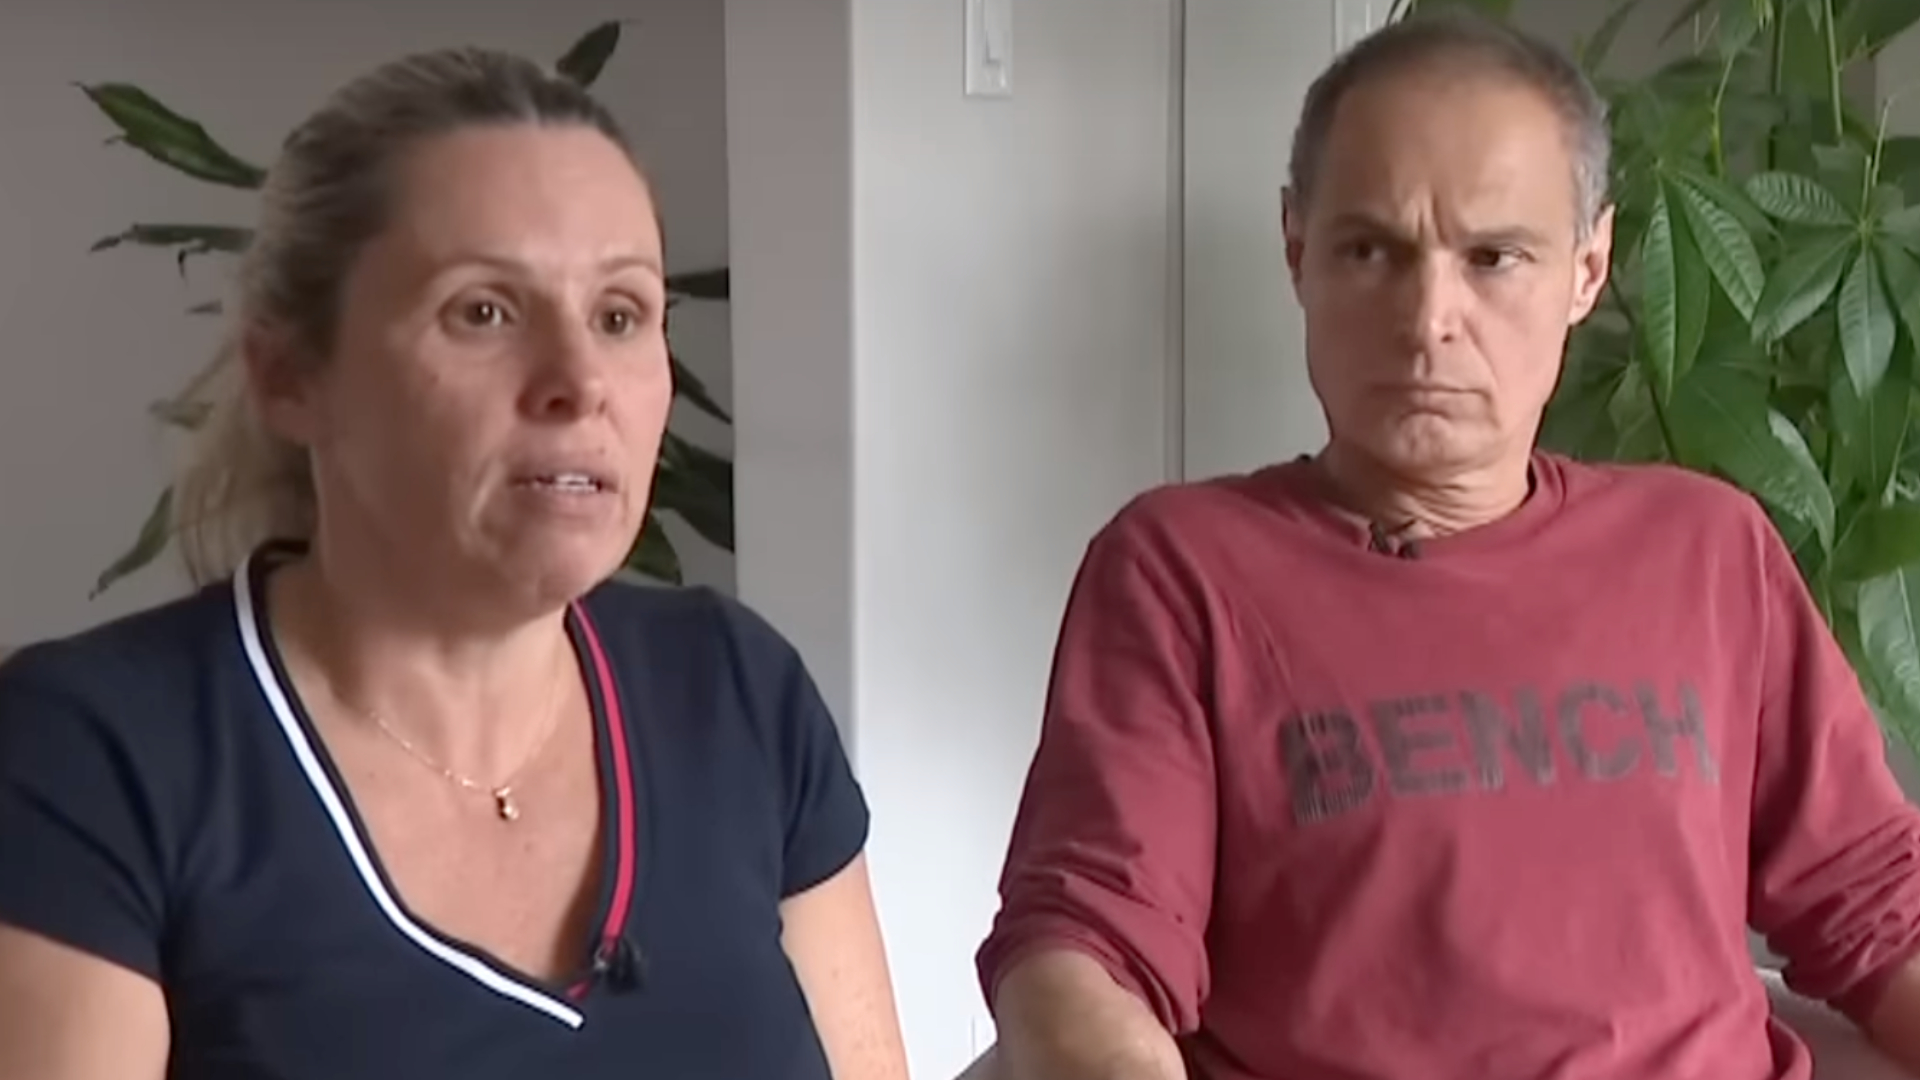 Pais de brasileiro de 16 anos morto no Canadá descobriram caso pela TV: “Nunca pensei que era ele”